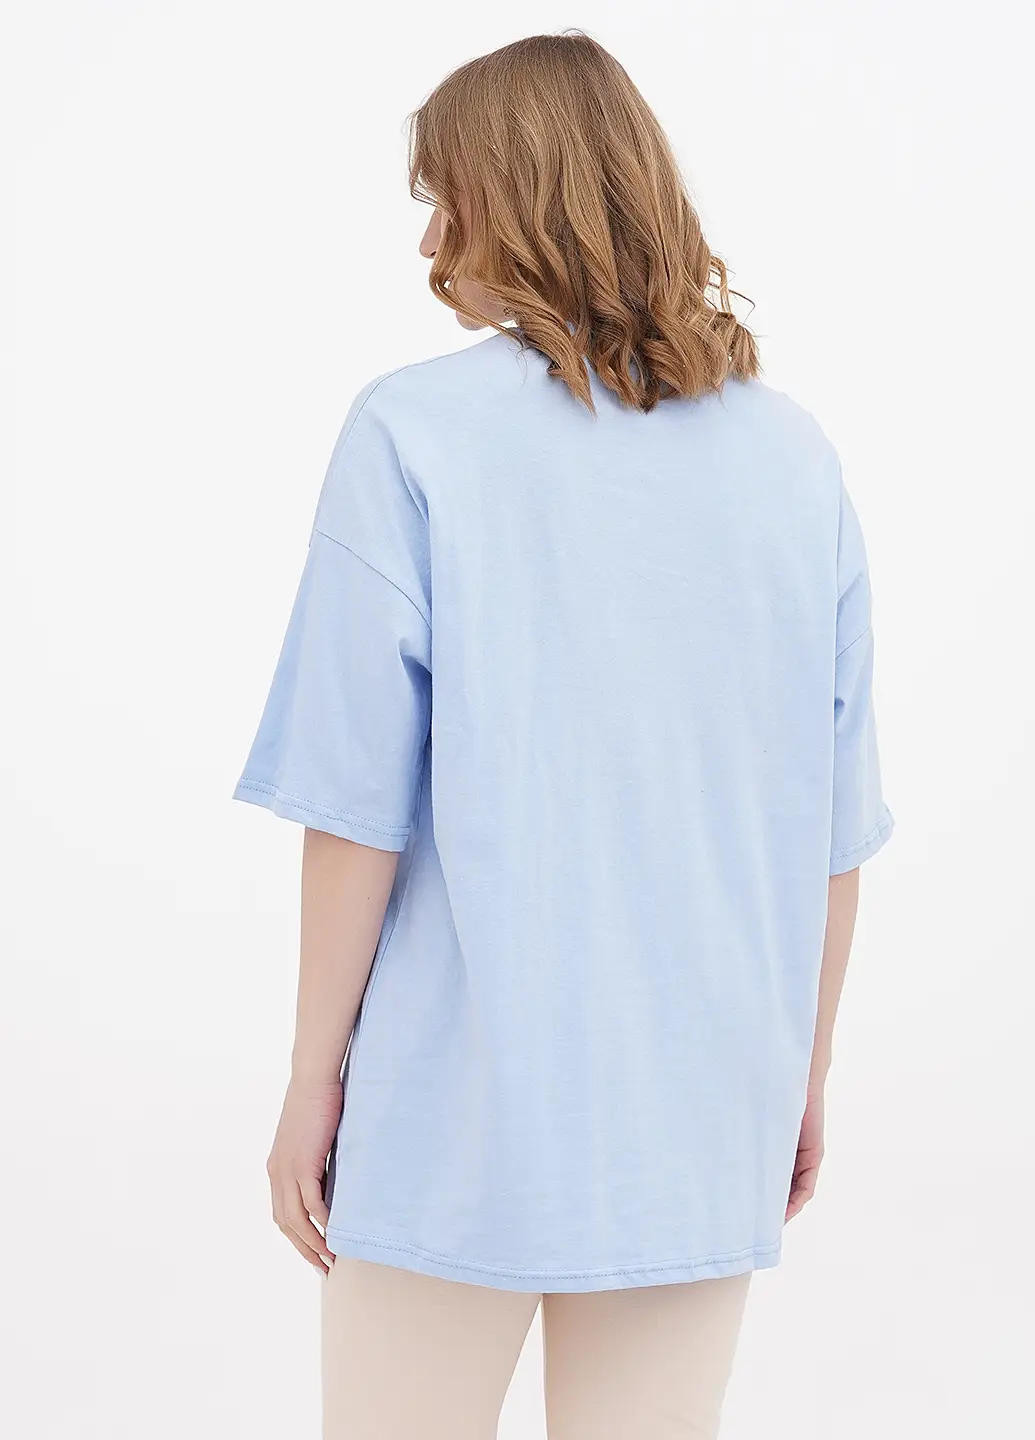 Голубая летняя женская футболка в стиле оверсайз. Sport Line